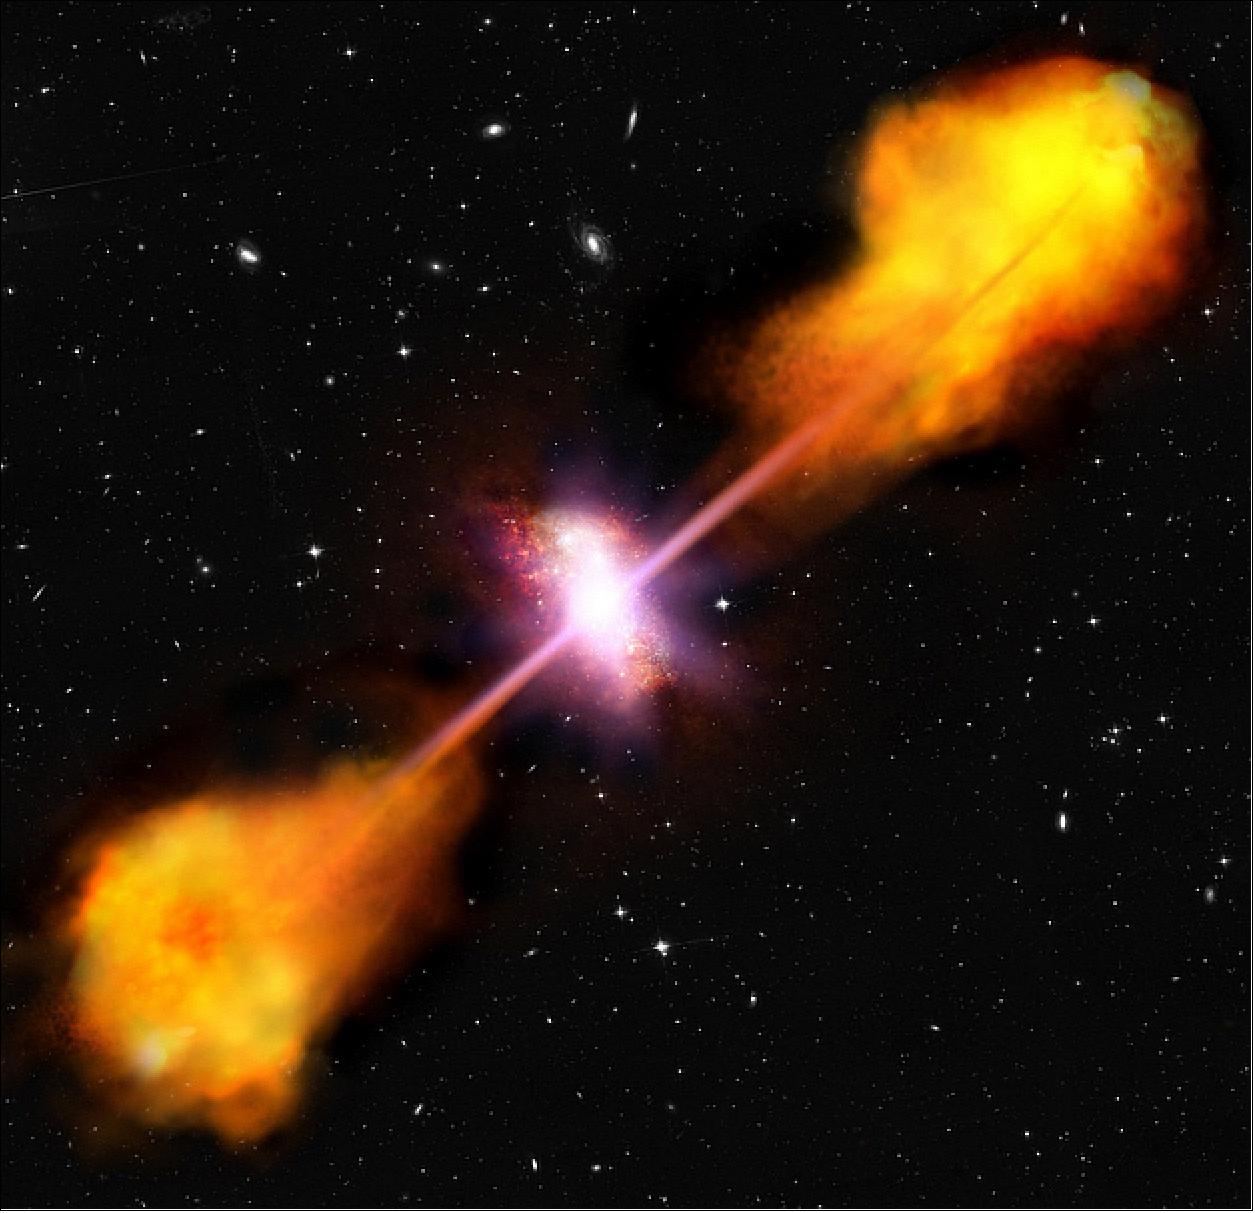 Figure 32: Artist's impression of radio-loud quasar in star-forming galaxy (image credit: ESA, C. Carreau)